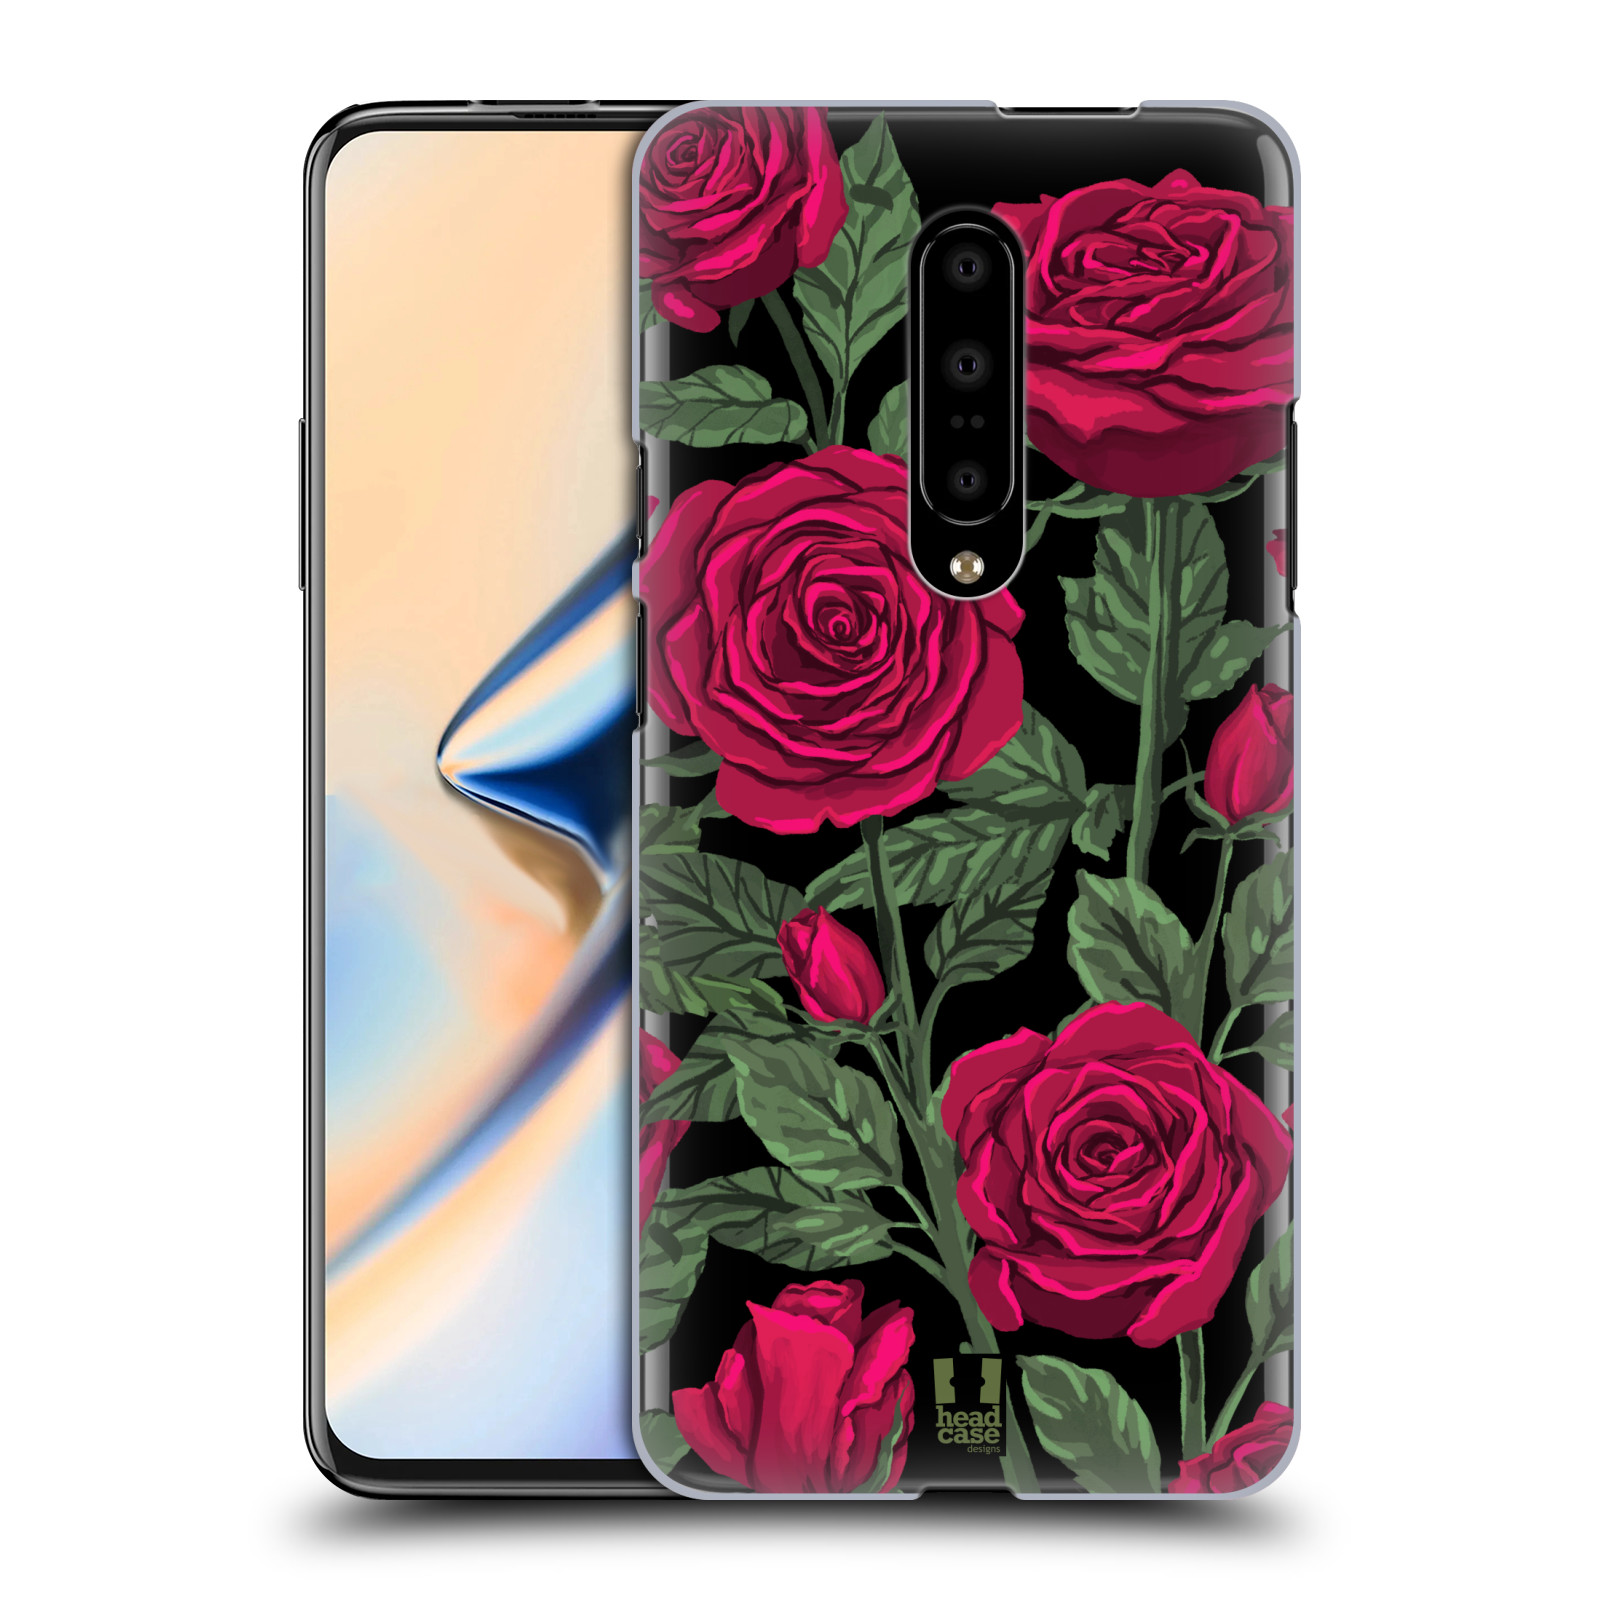 Pouzdro na mobil OnePlus 7 - HEAD CASE - květina růže